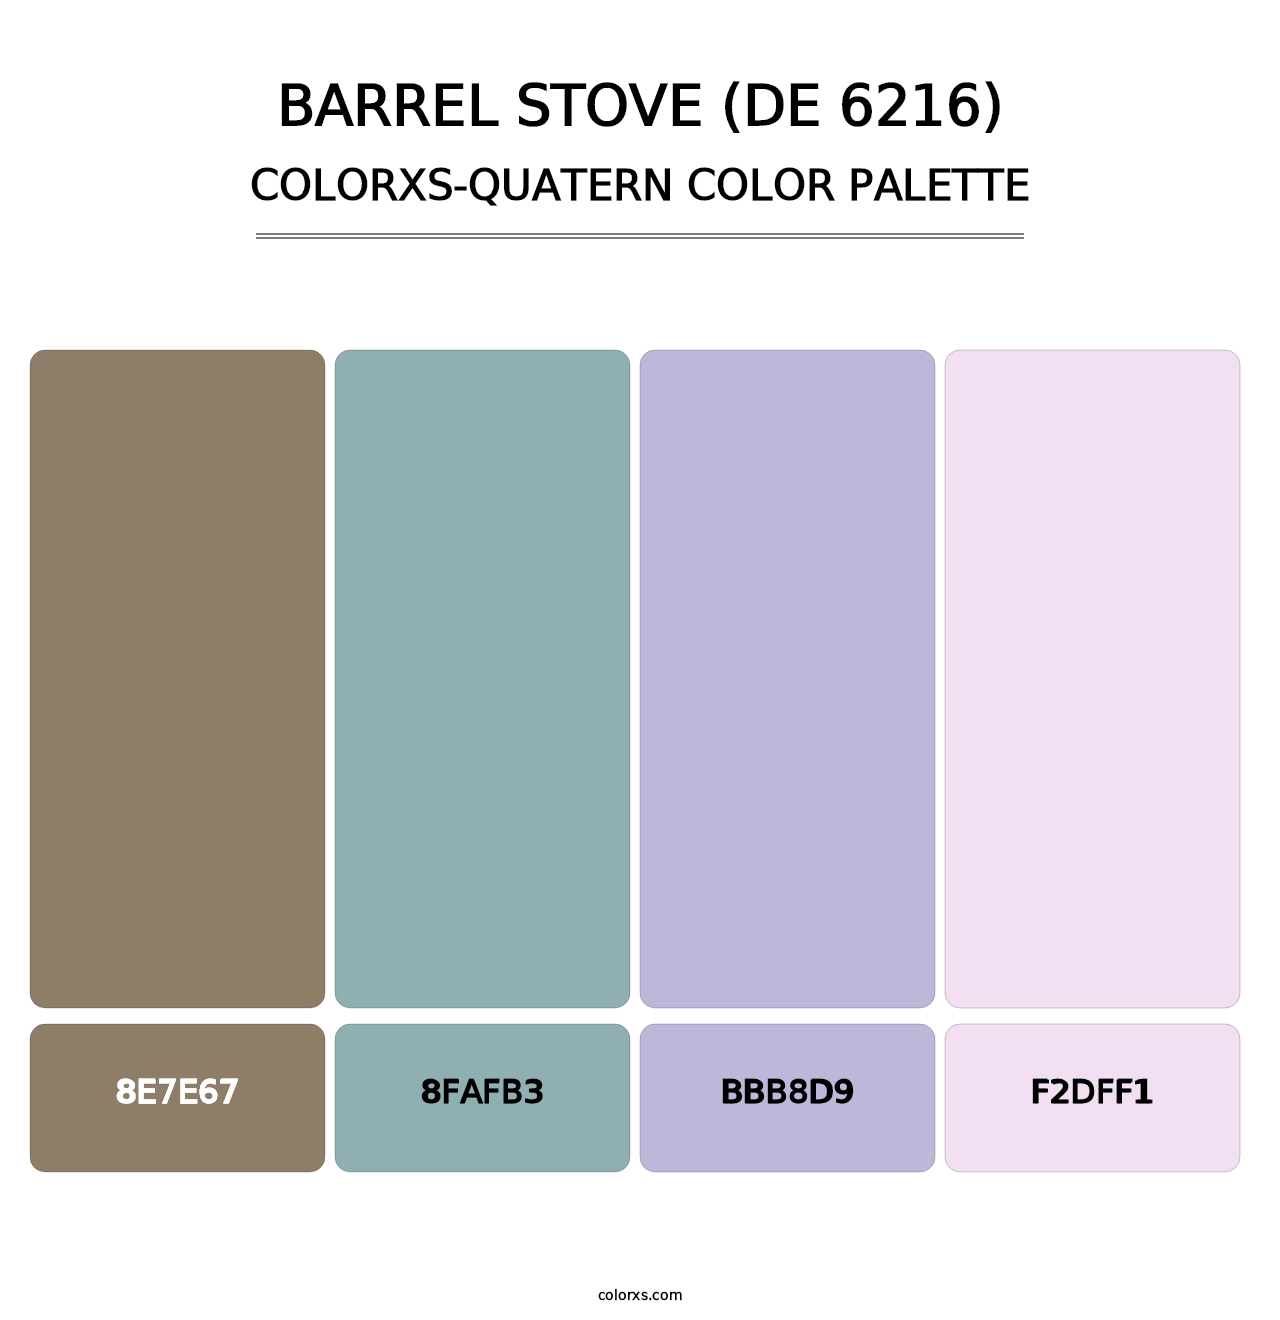 Barrel Stove (DE 6216) - Colorxs Quatern Palette